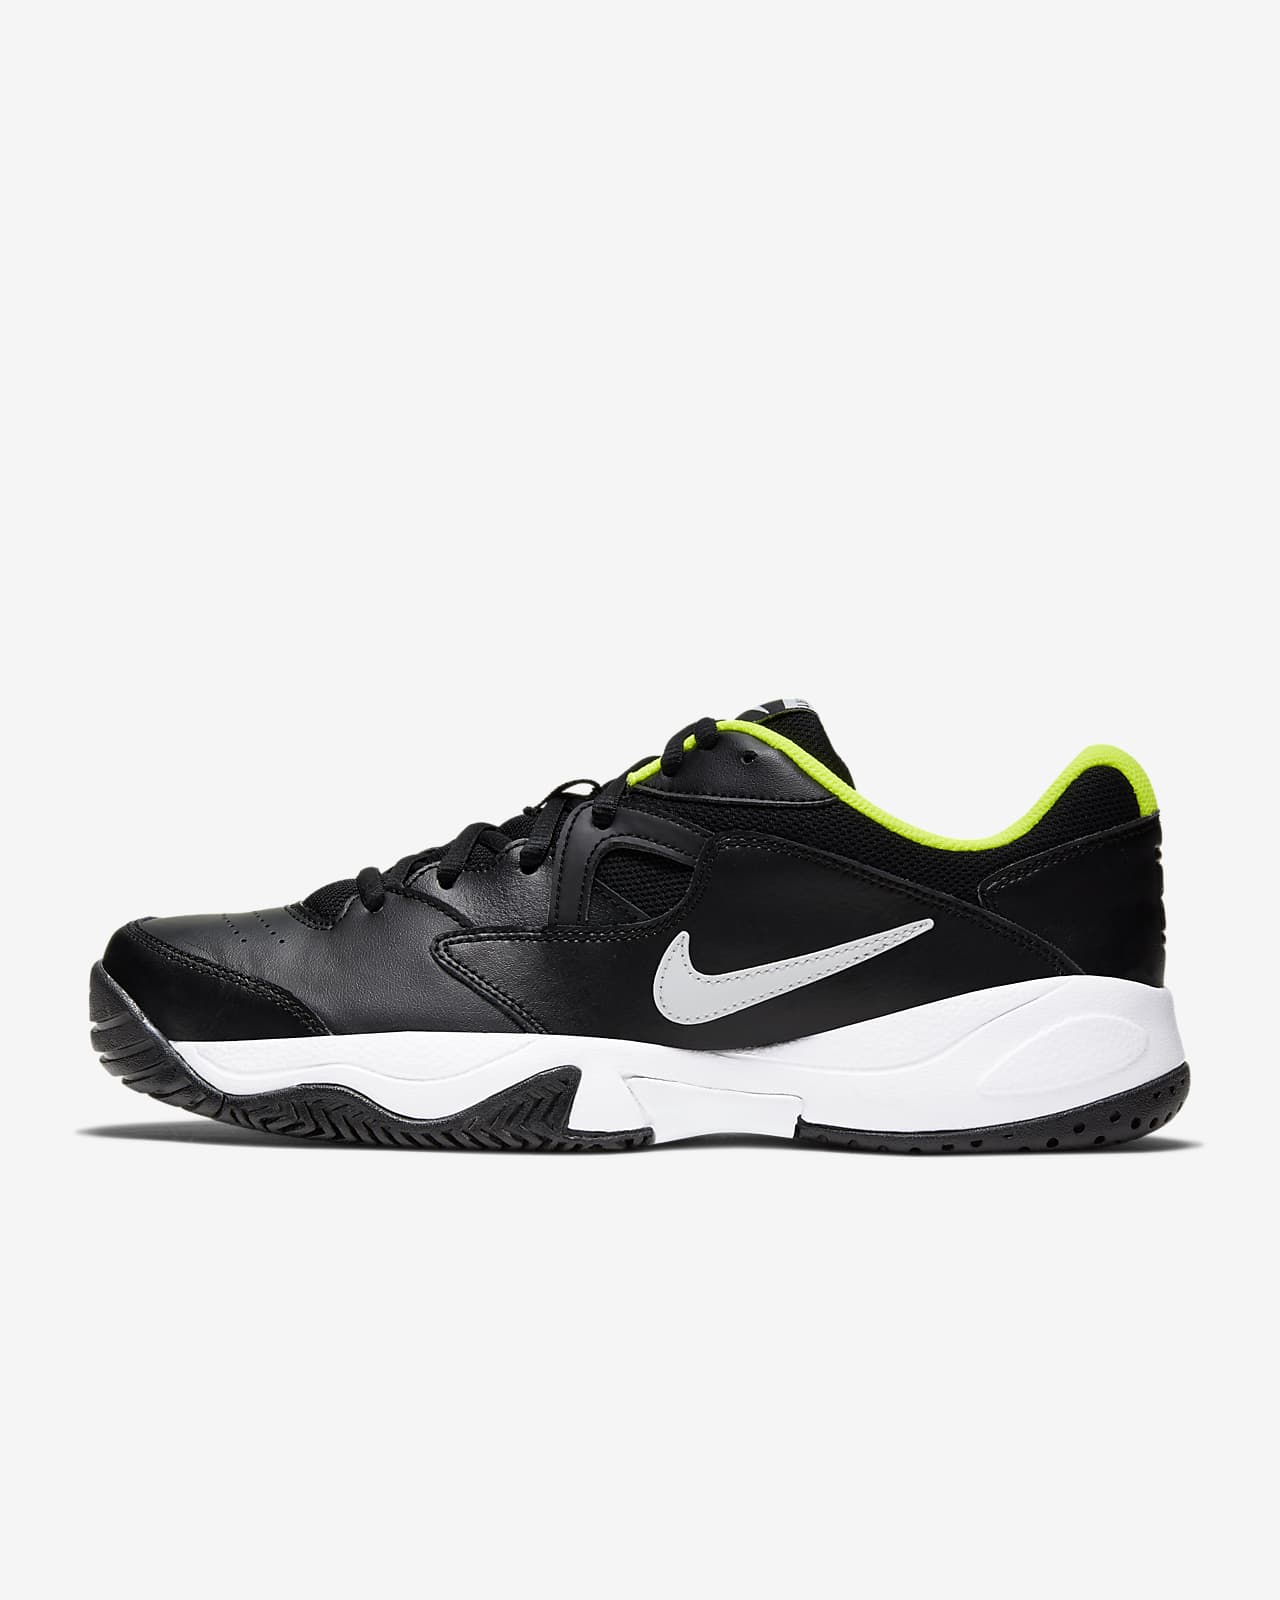 Hard Court Tennis Shoe. Nike LU